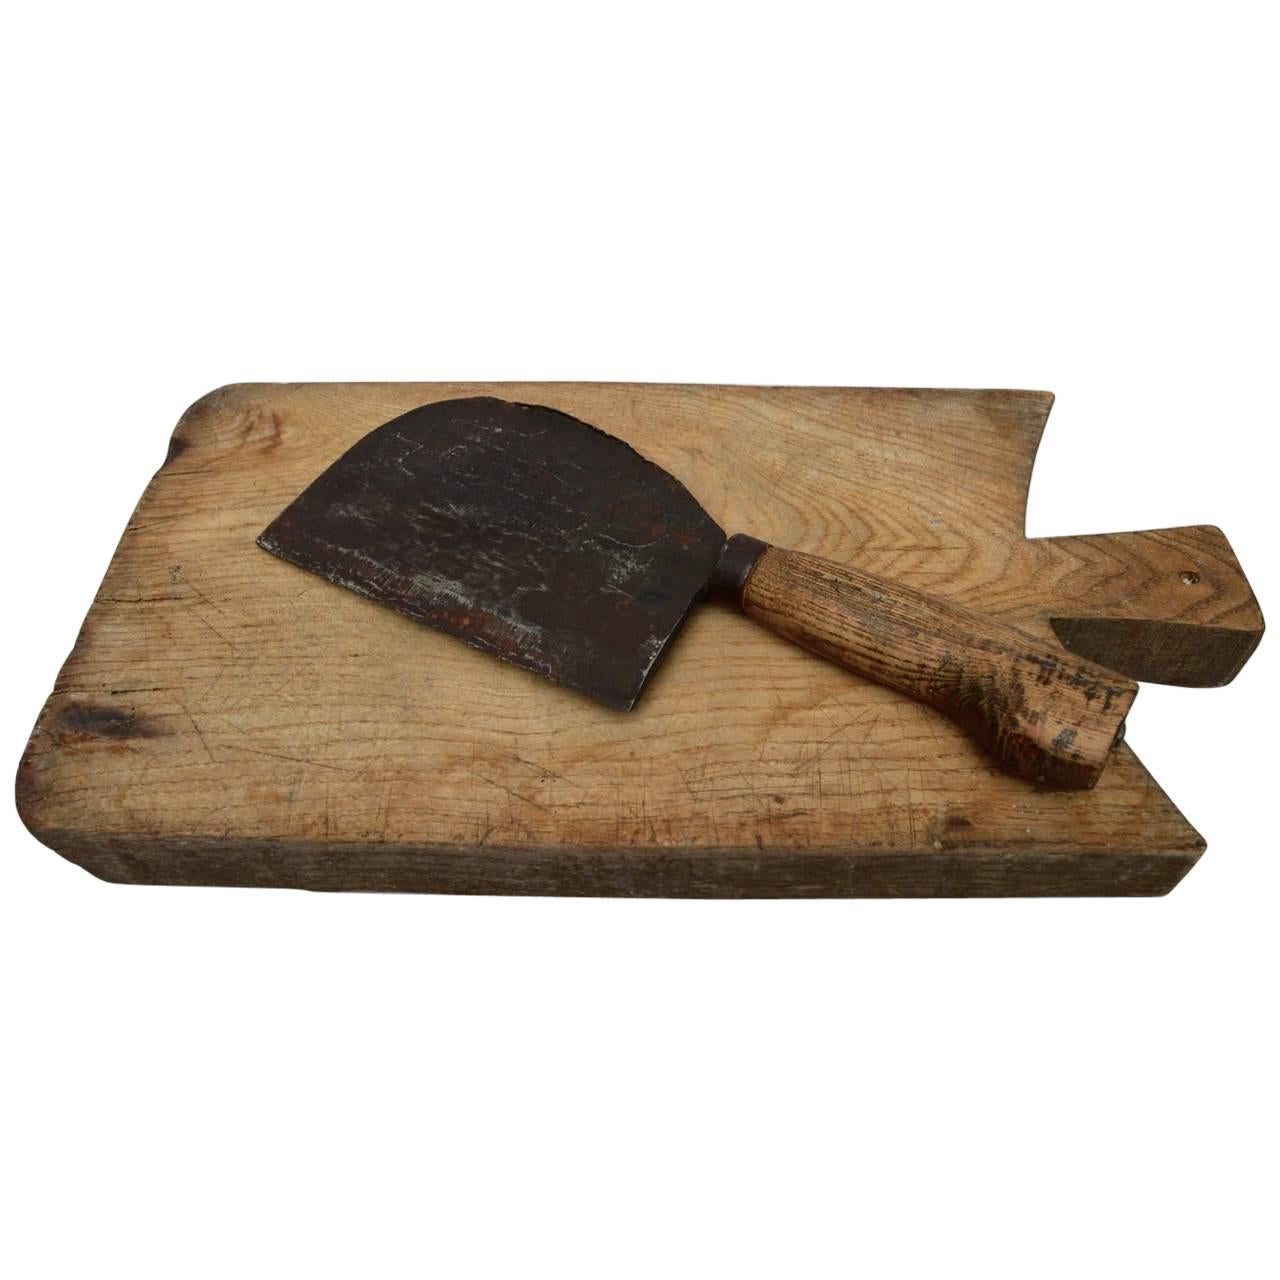 19th century Dutch thick, heavy cutting board
